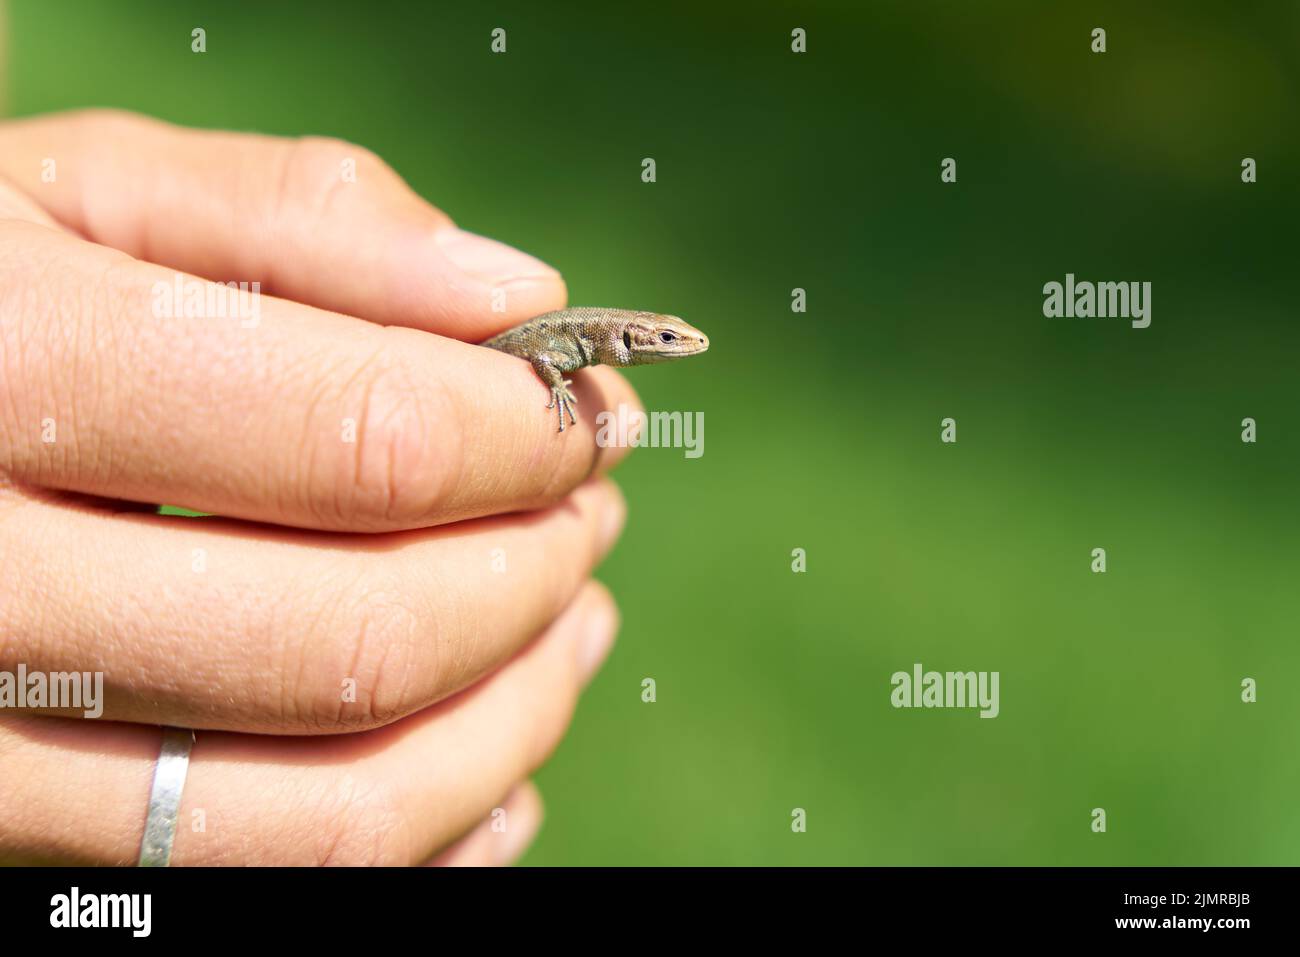 Viviparous Eidechse, Zootoca vivipara in den Händen eines Spezialisten, um die Art zu messen und zu identifizieren Stockfoto